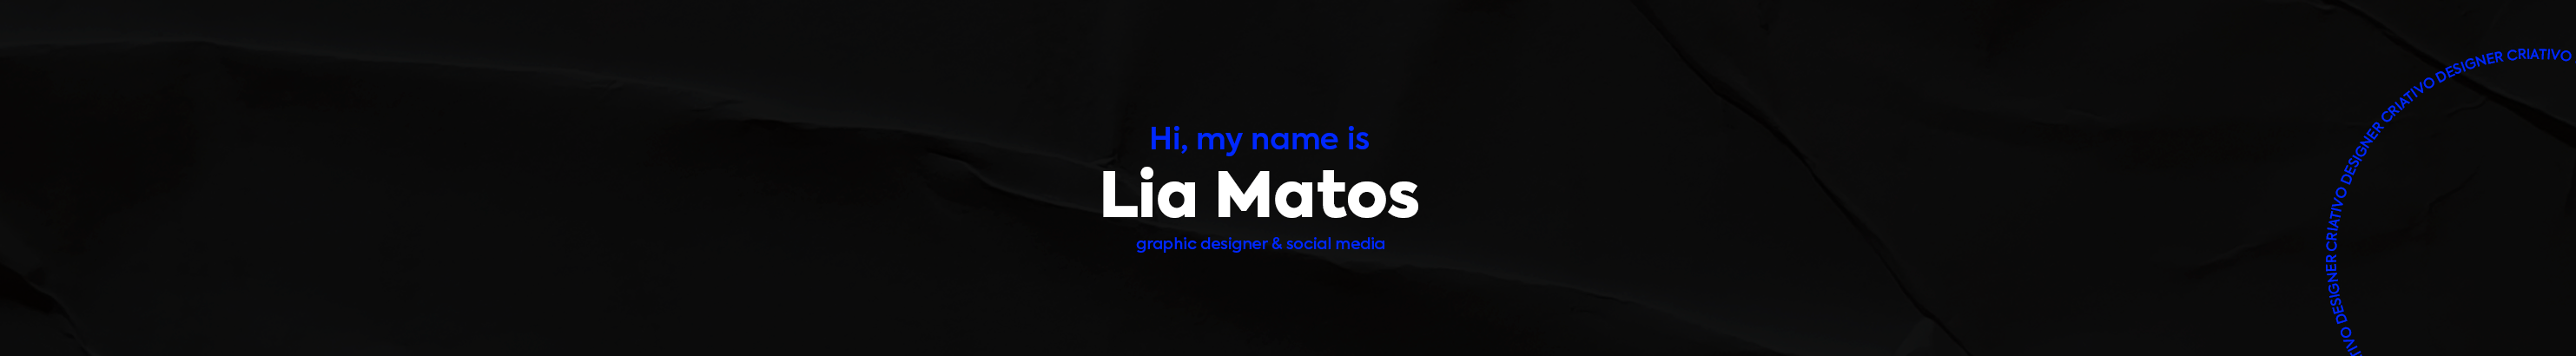 Баннер профиля Lia Matos